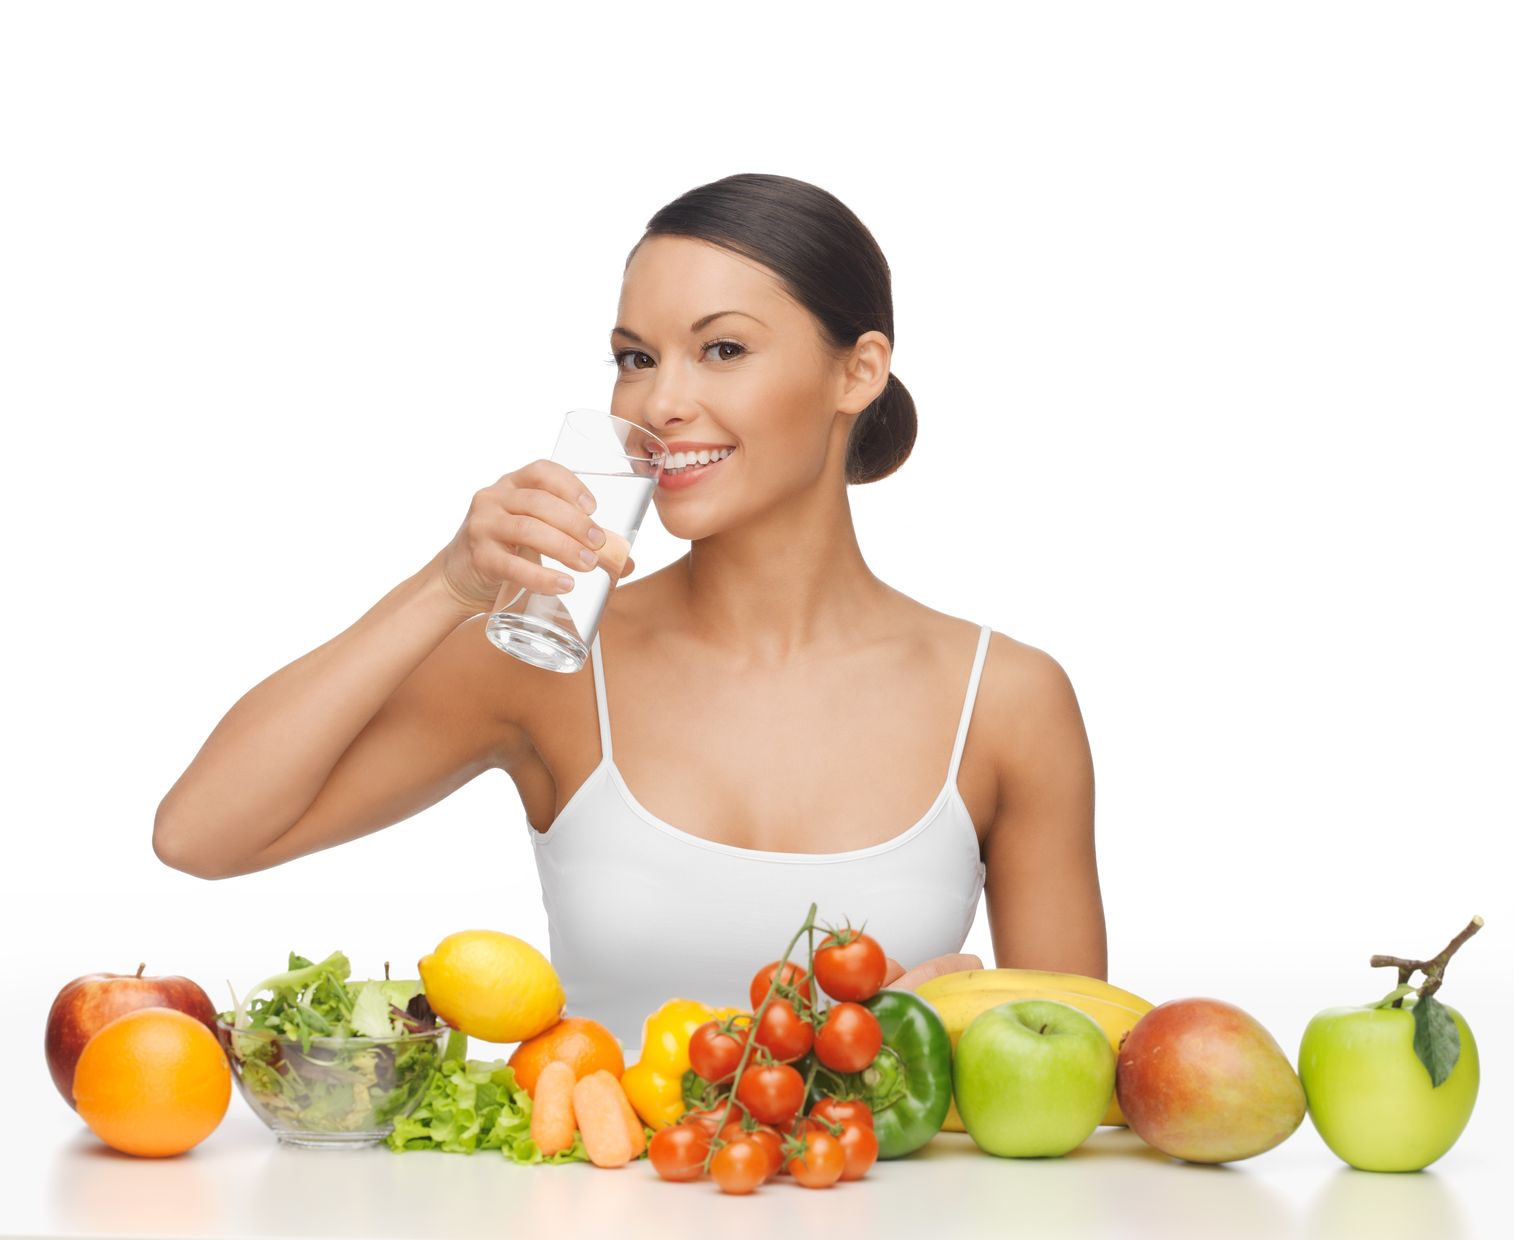 แนะคลายร้อนด้วยผัก ผลไม้ ดื่มน้ำ 8-10 แก้ว/วัน thaihealth